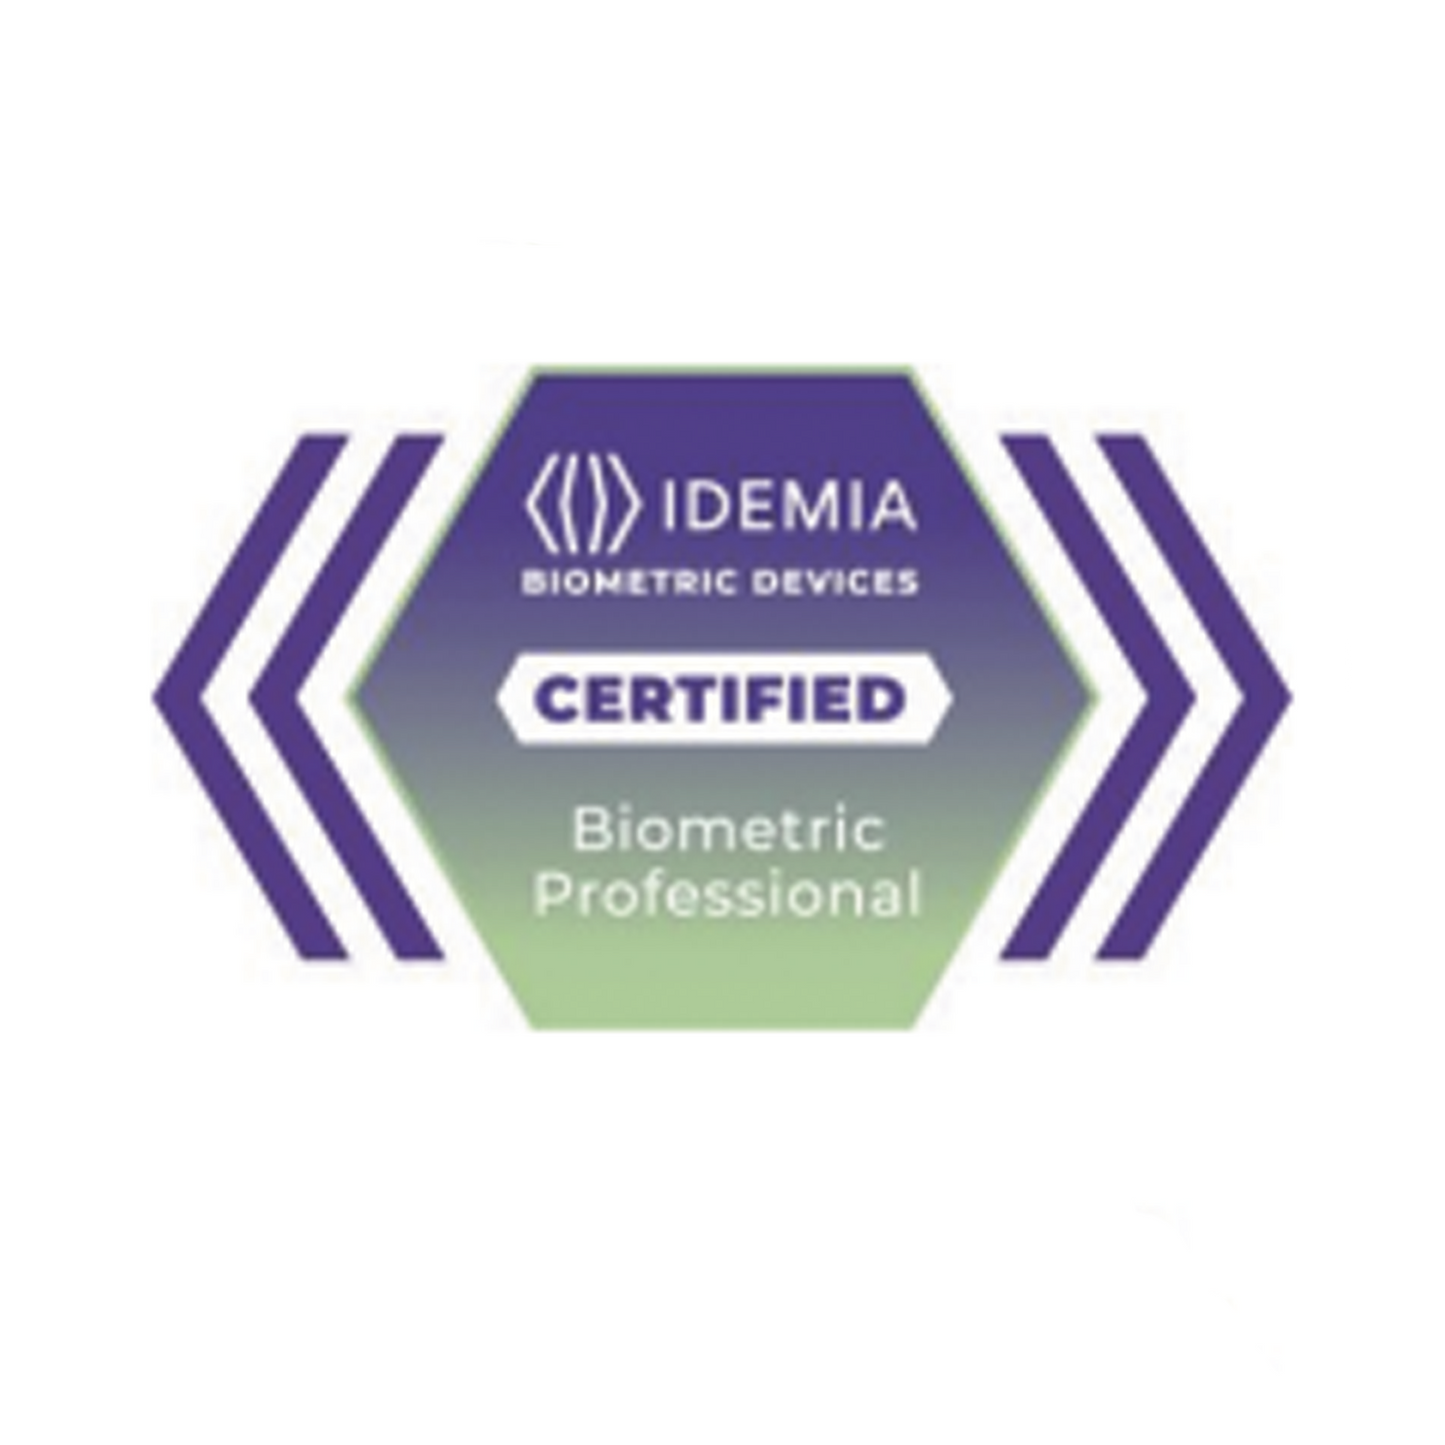 Certificado Idemia Profesional Biométrico , membresía de 2 años con acceso al módulo de ventas 24/7 a la plataforma de aprendizaje de dispositivos biométricos de IDEMIA.